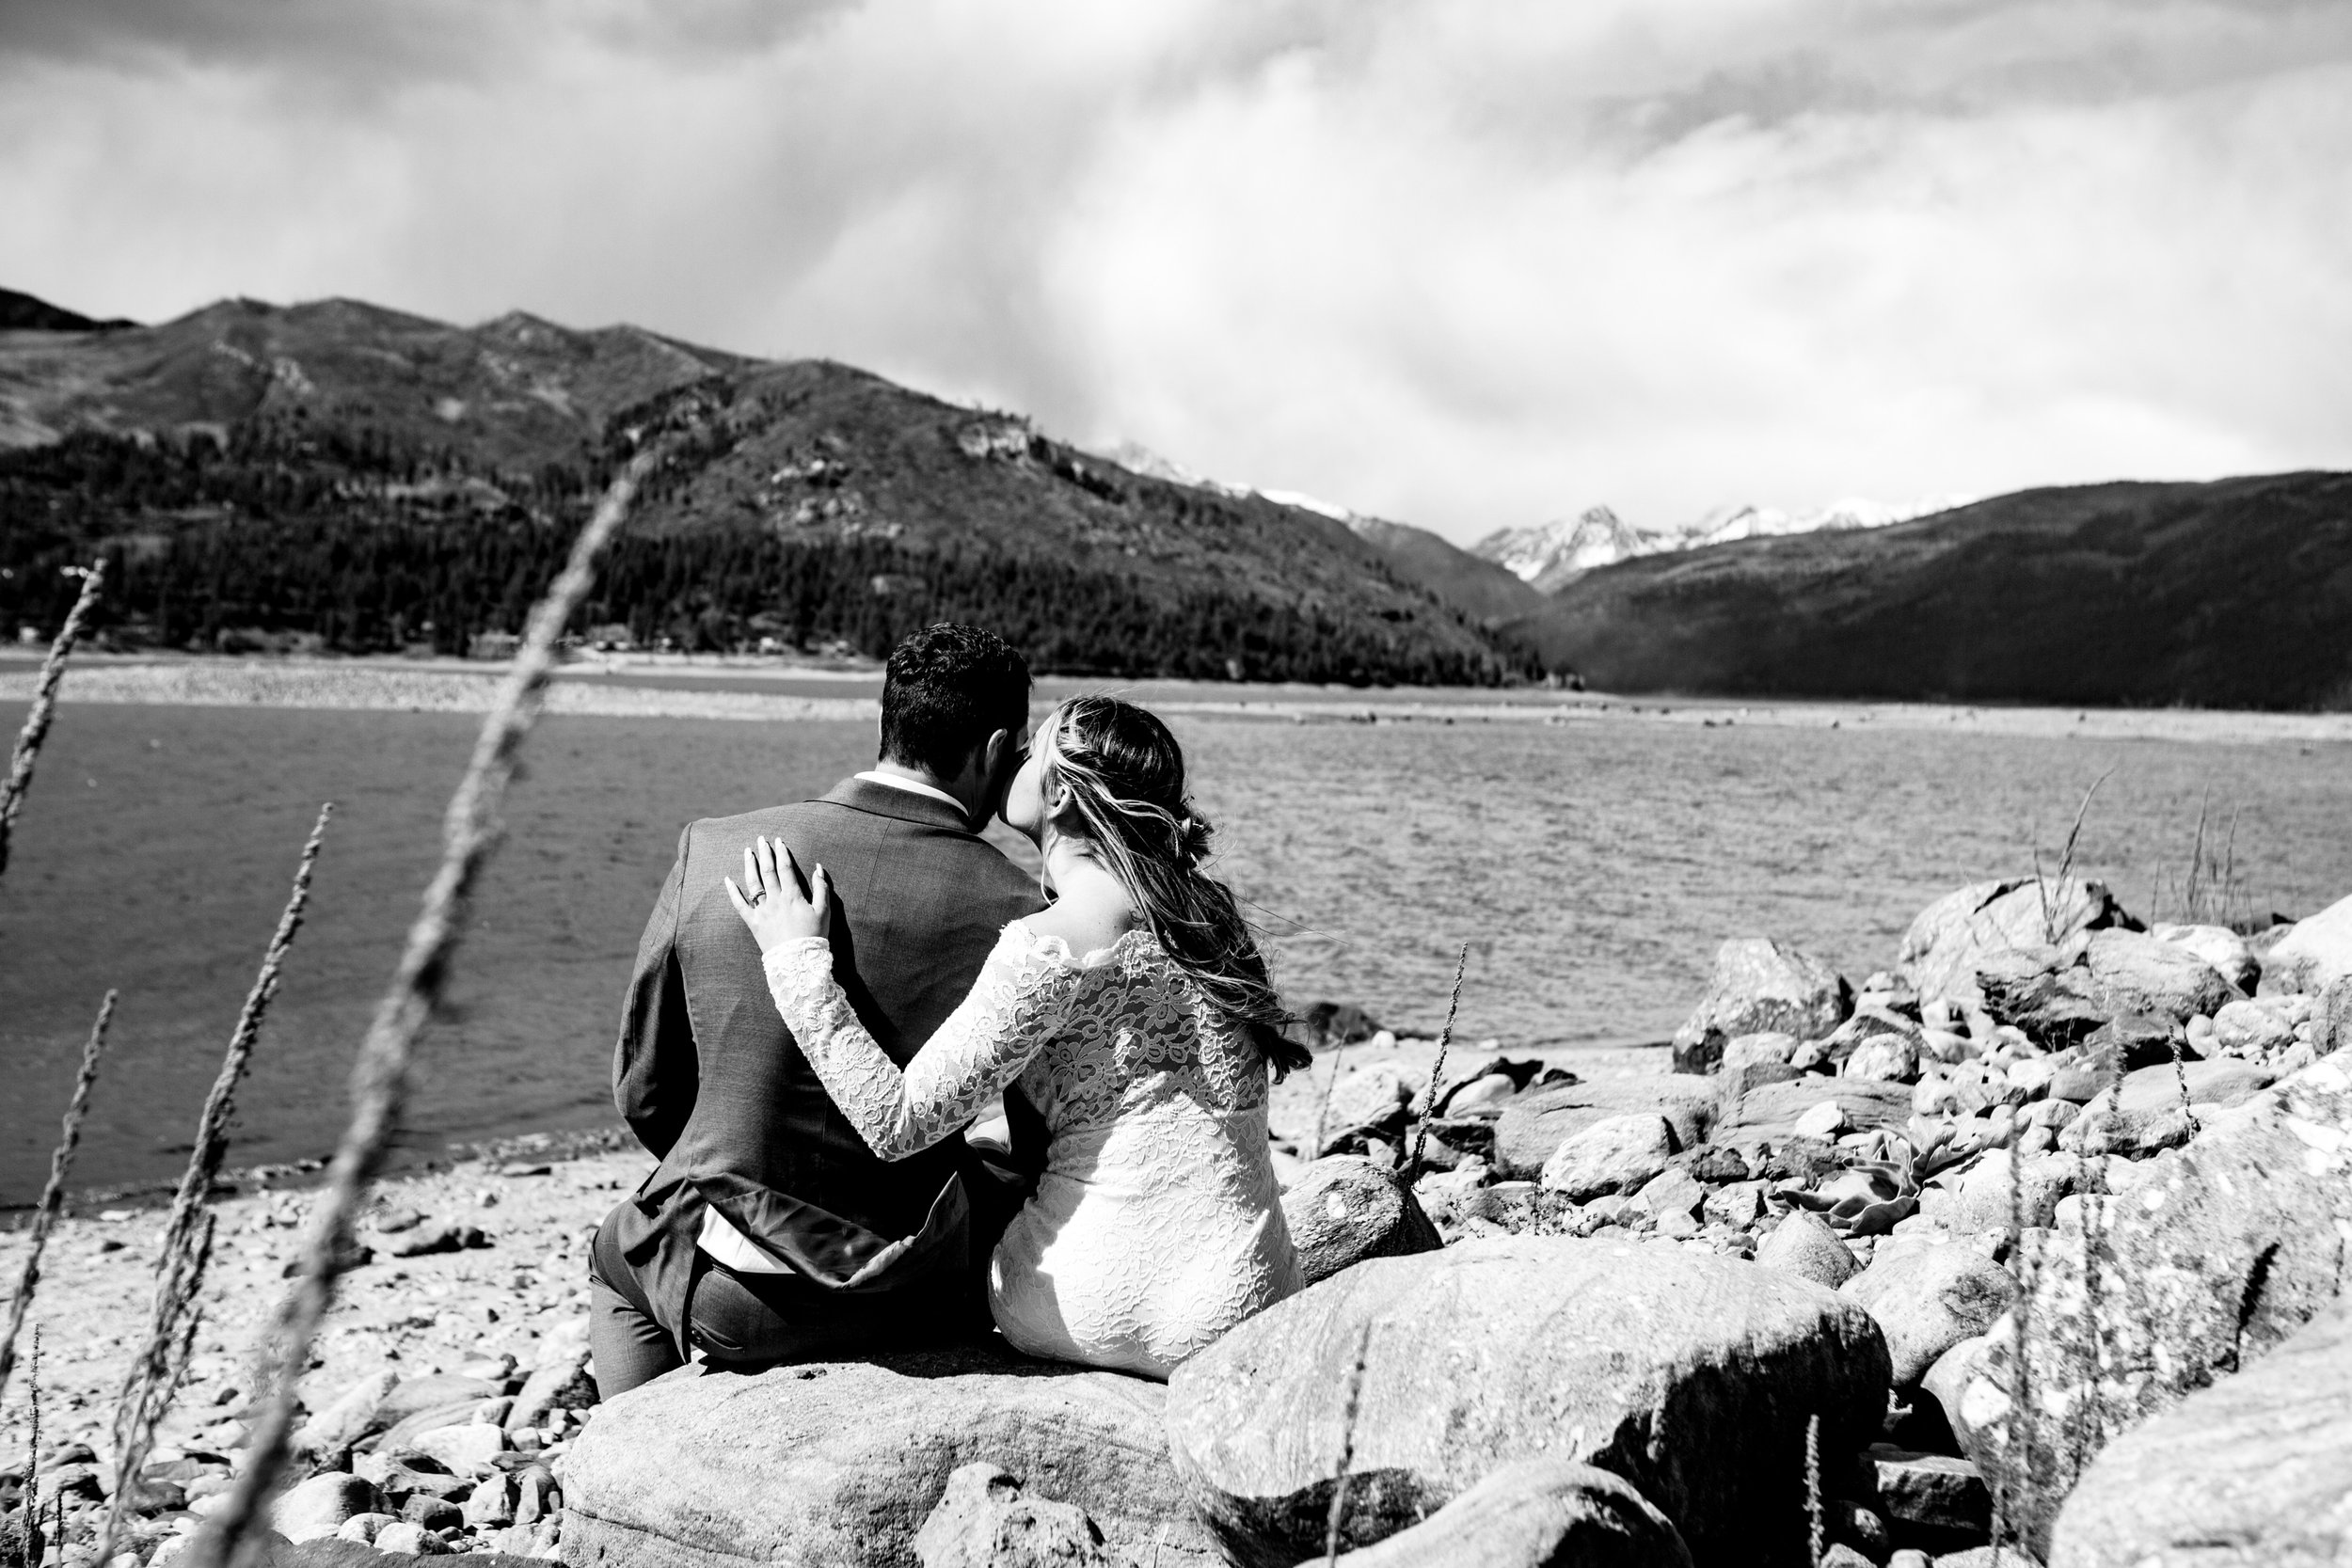  Vallecito Lake Intimate Wedding Photos.  Durango Colorado  © Alexi Hubbell Photography 2022 